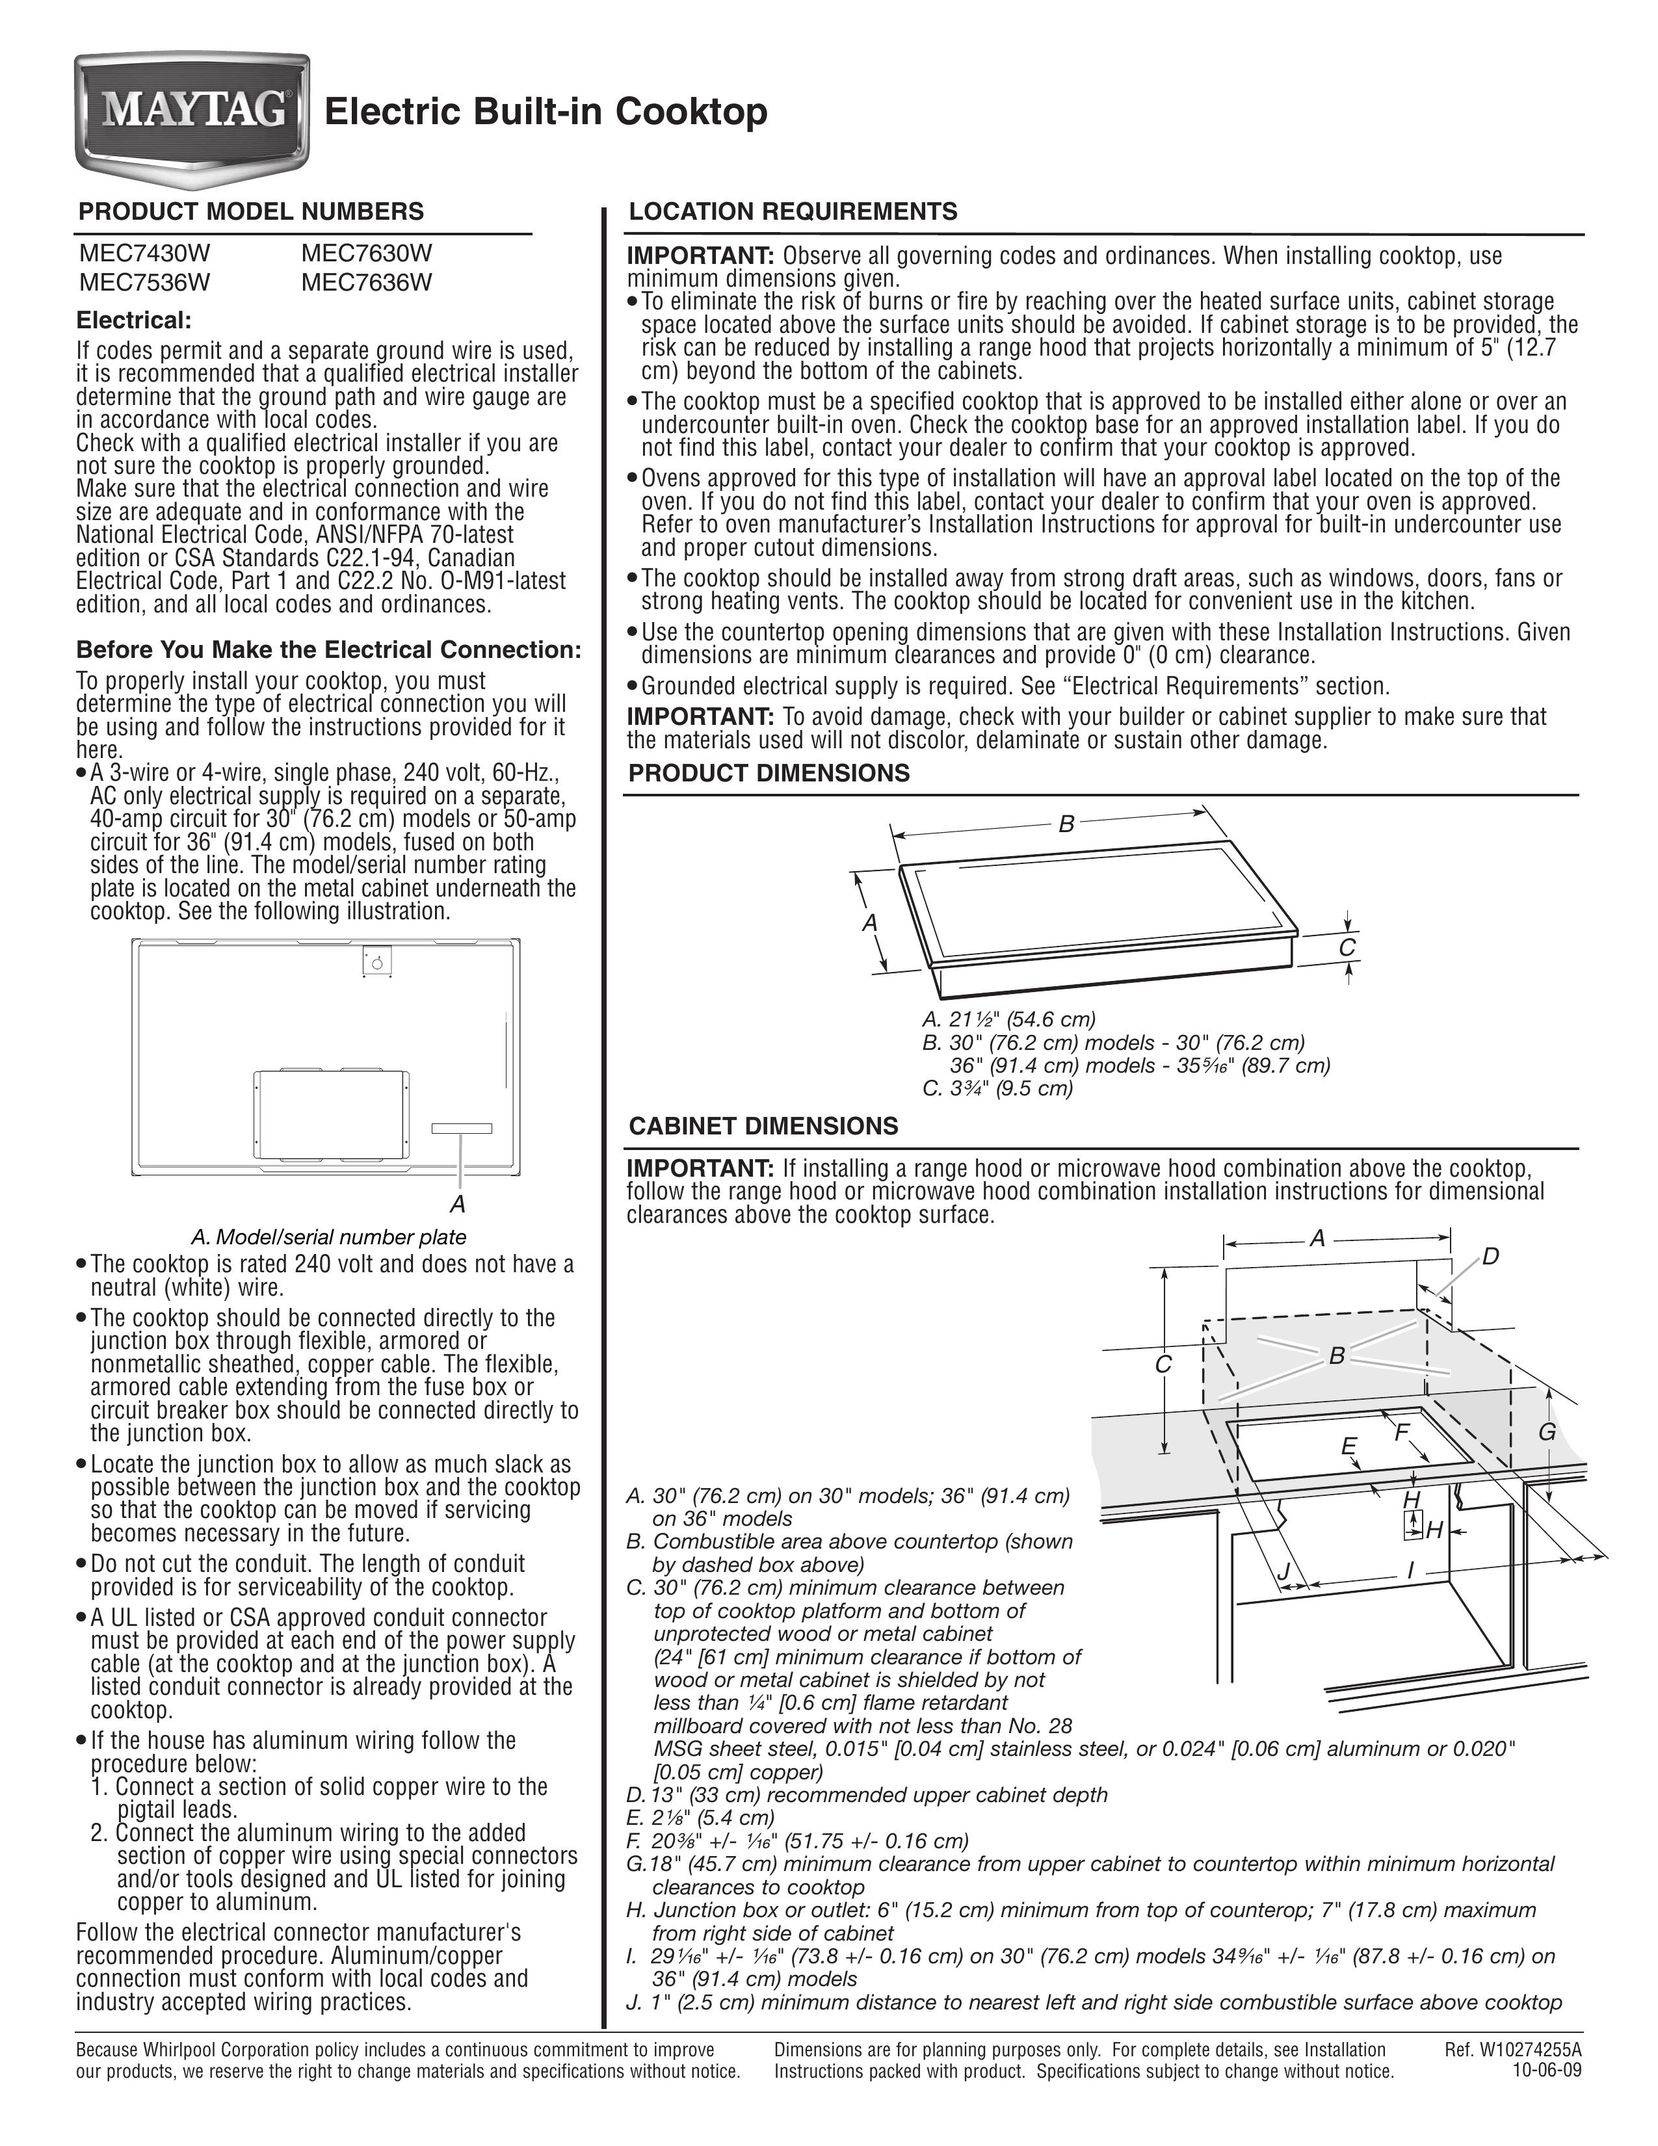 Maytag MEC7430W Cooktop User Manual